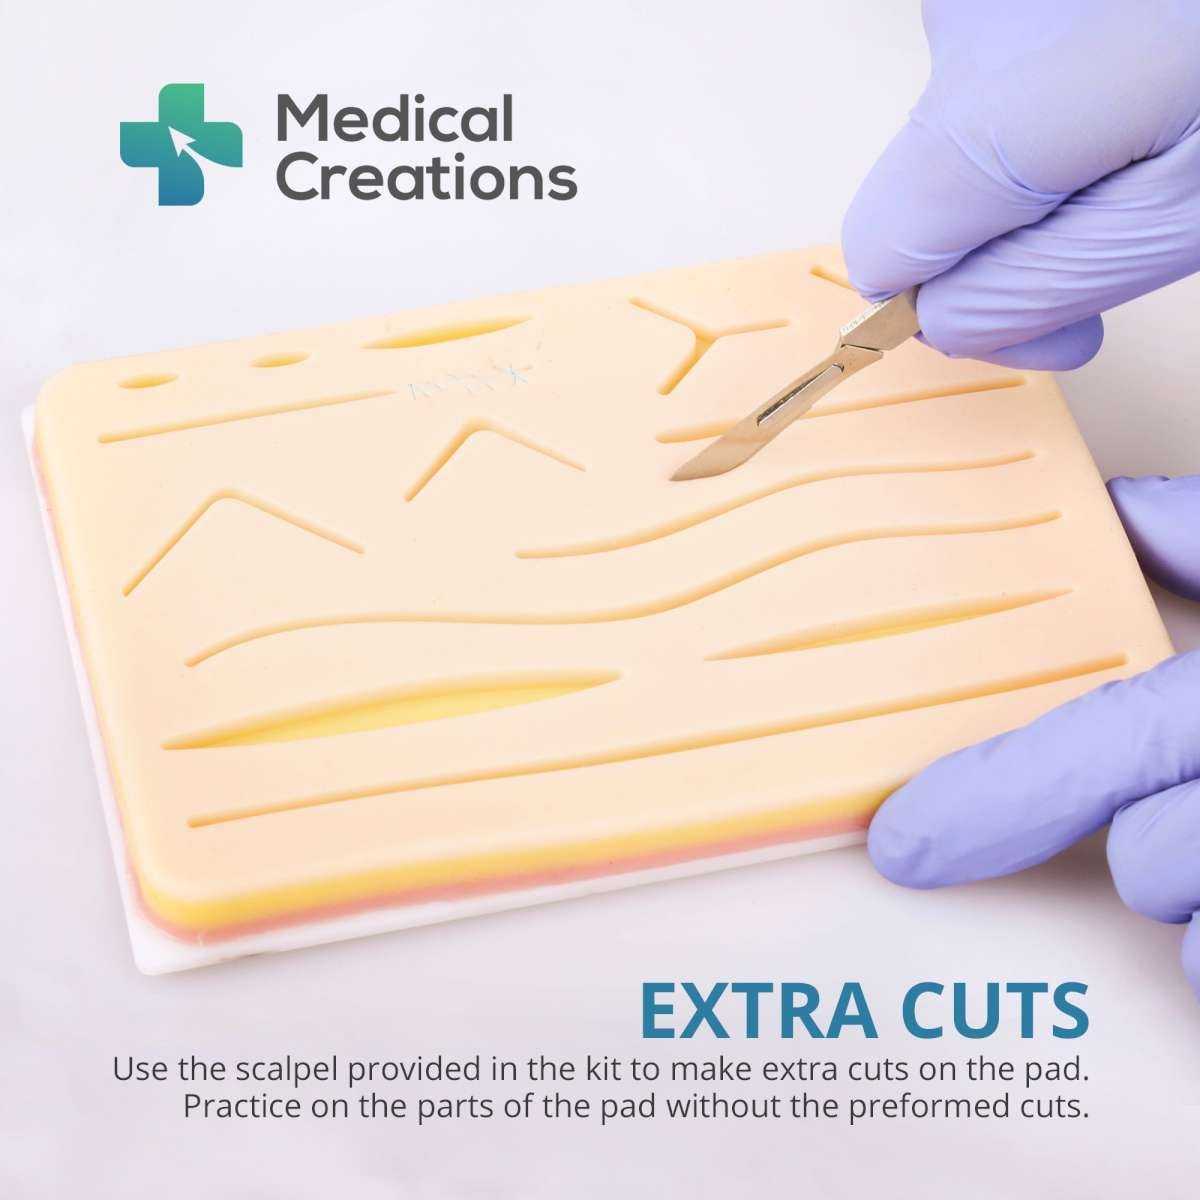 Suture le kit chirurgical de pratique en matière de suture avec la